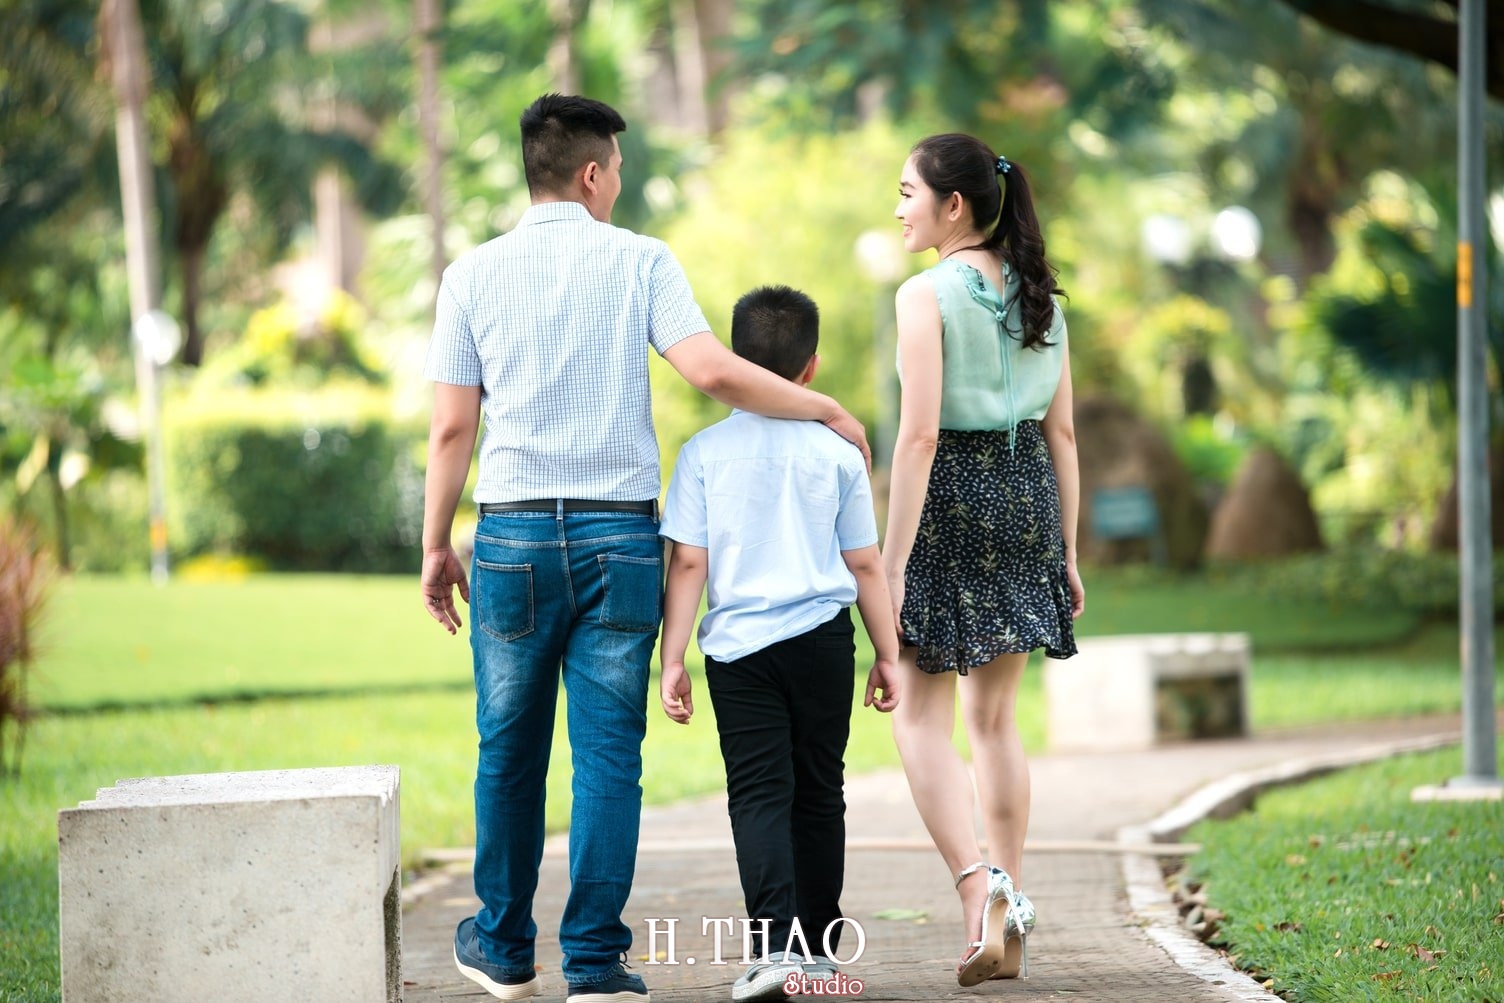 Anh Gia dinh 3 nguoi 14 - Bộ ảnh gia đình 3 người chụp ngoại cảnh đẹp tự nhiên - HThao Studio